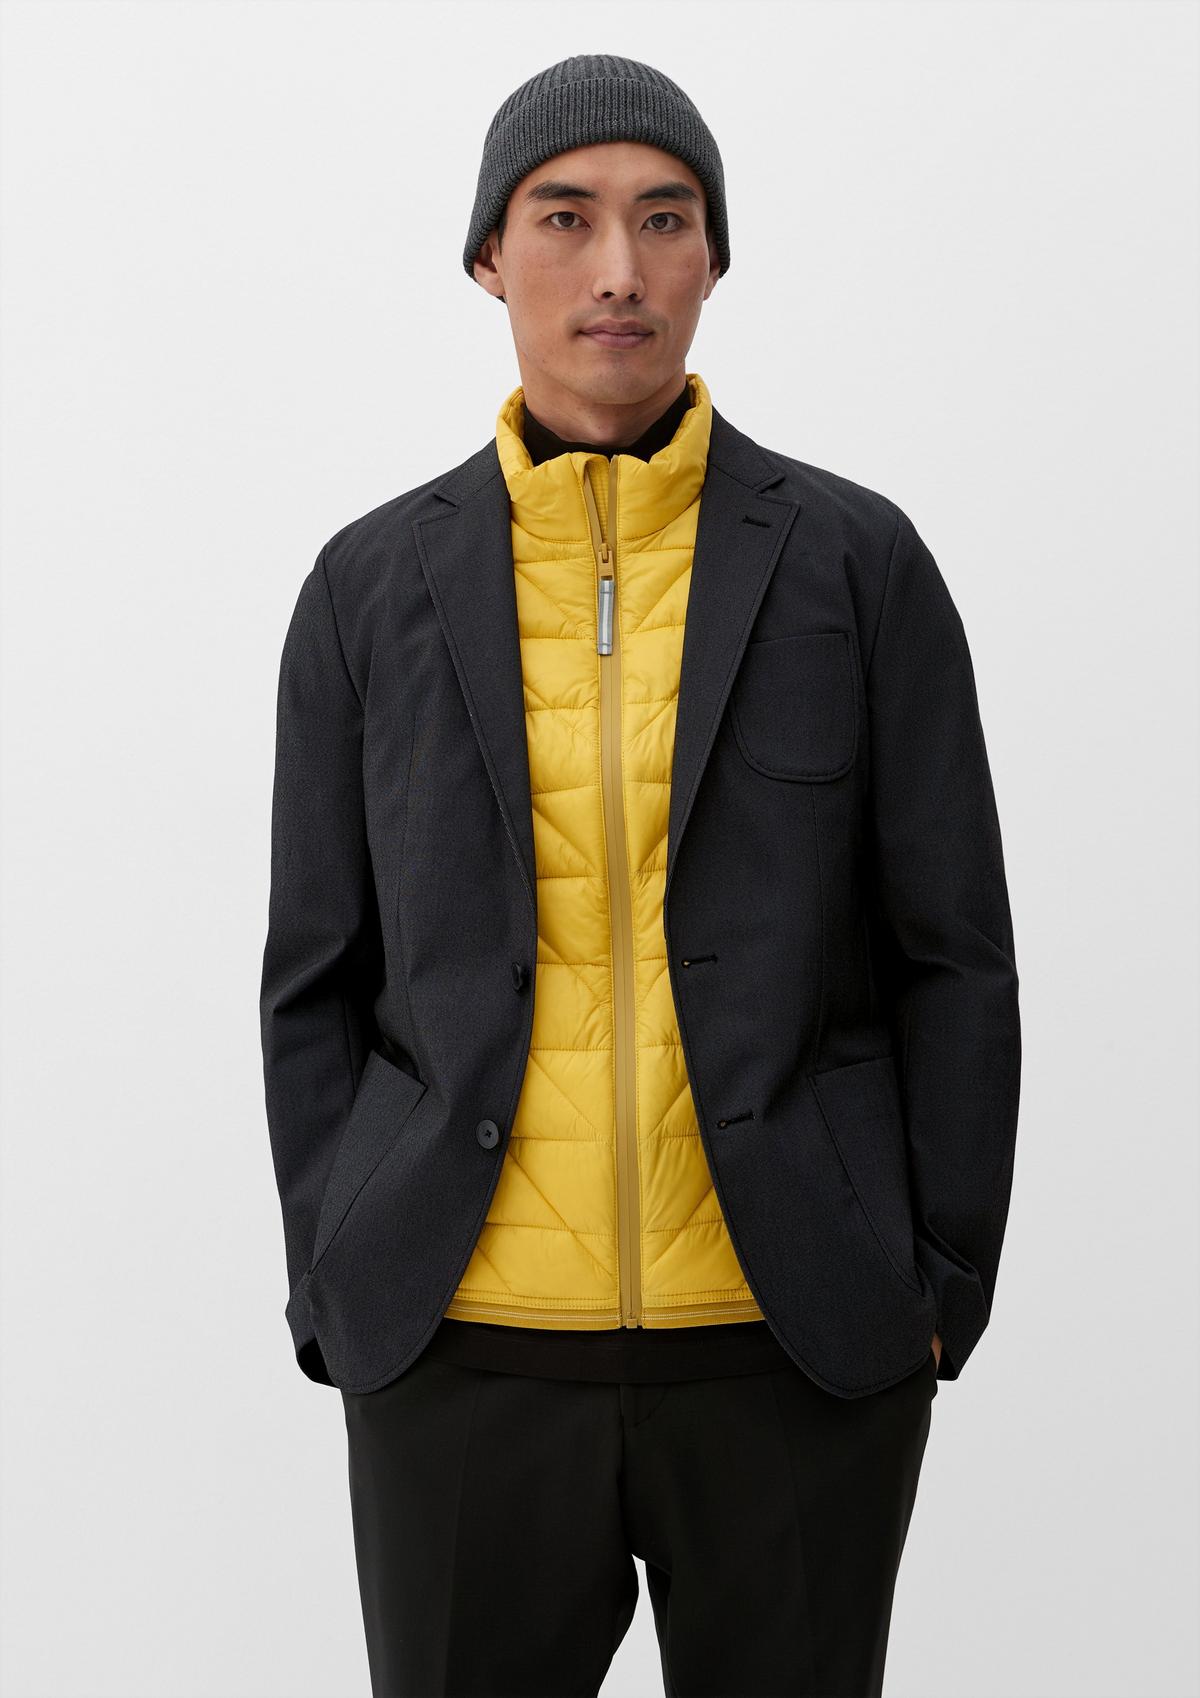 Indoor suit jacket